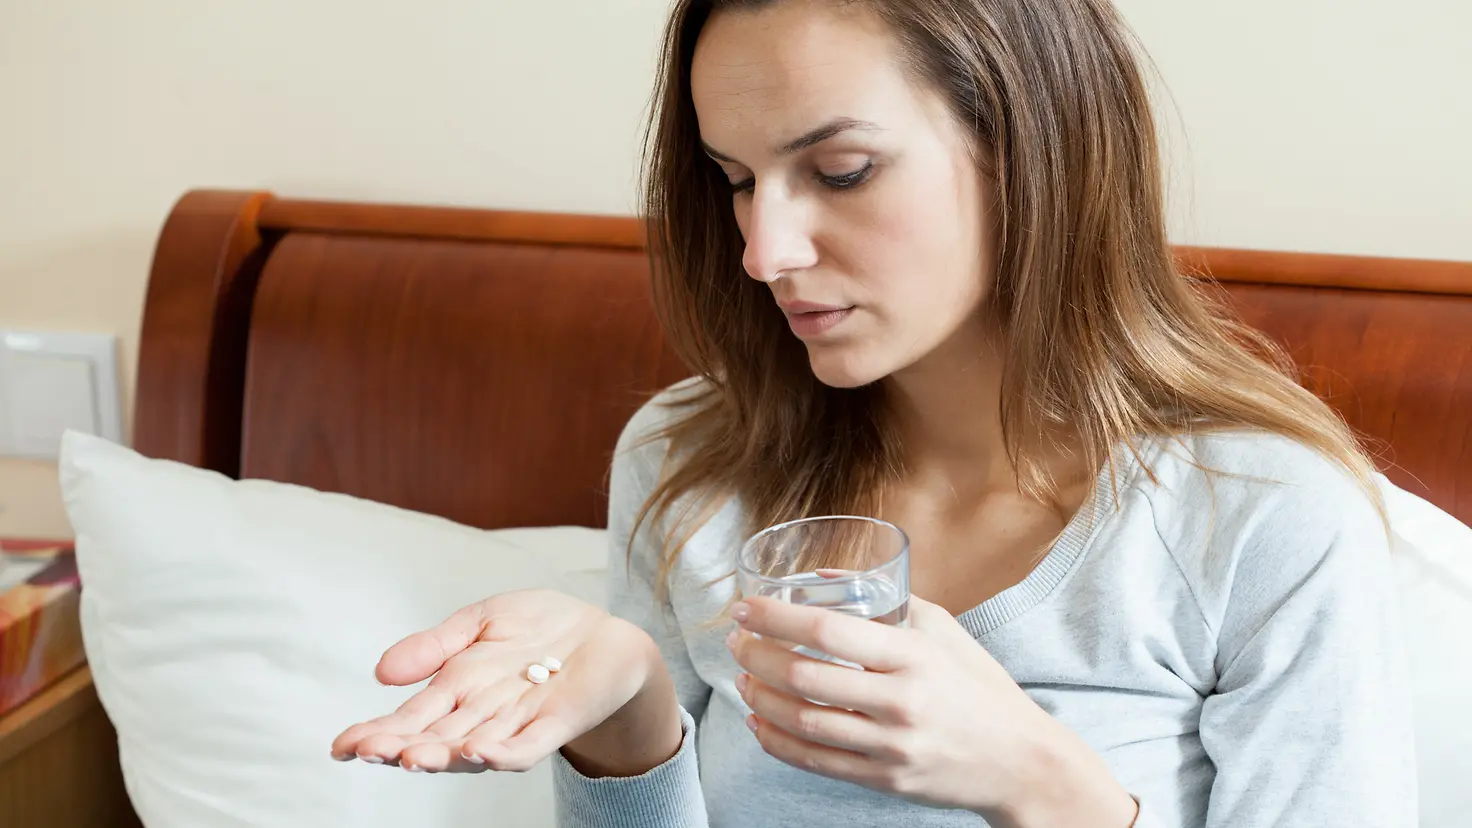 Zu sehen ist eine Frau, die mit einem Glas Wasser Tabletten einnimmt